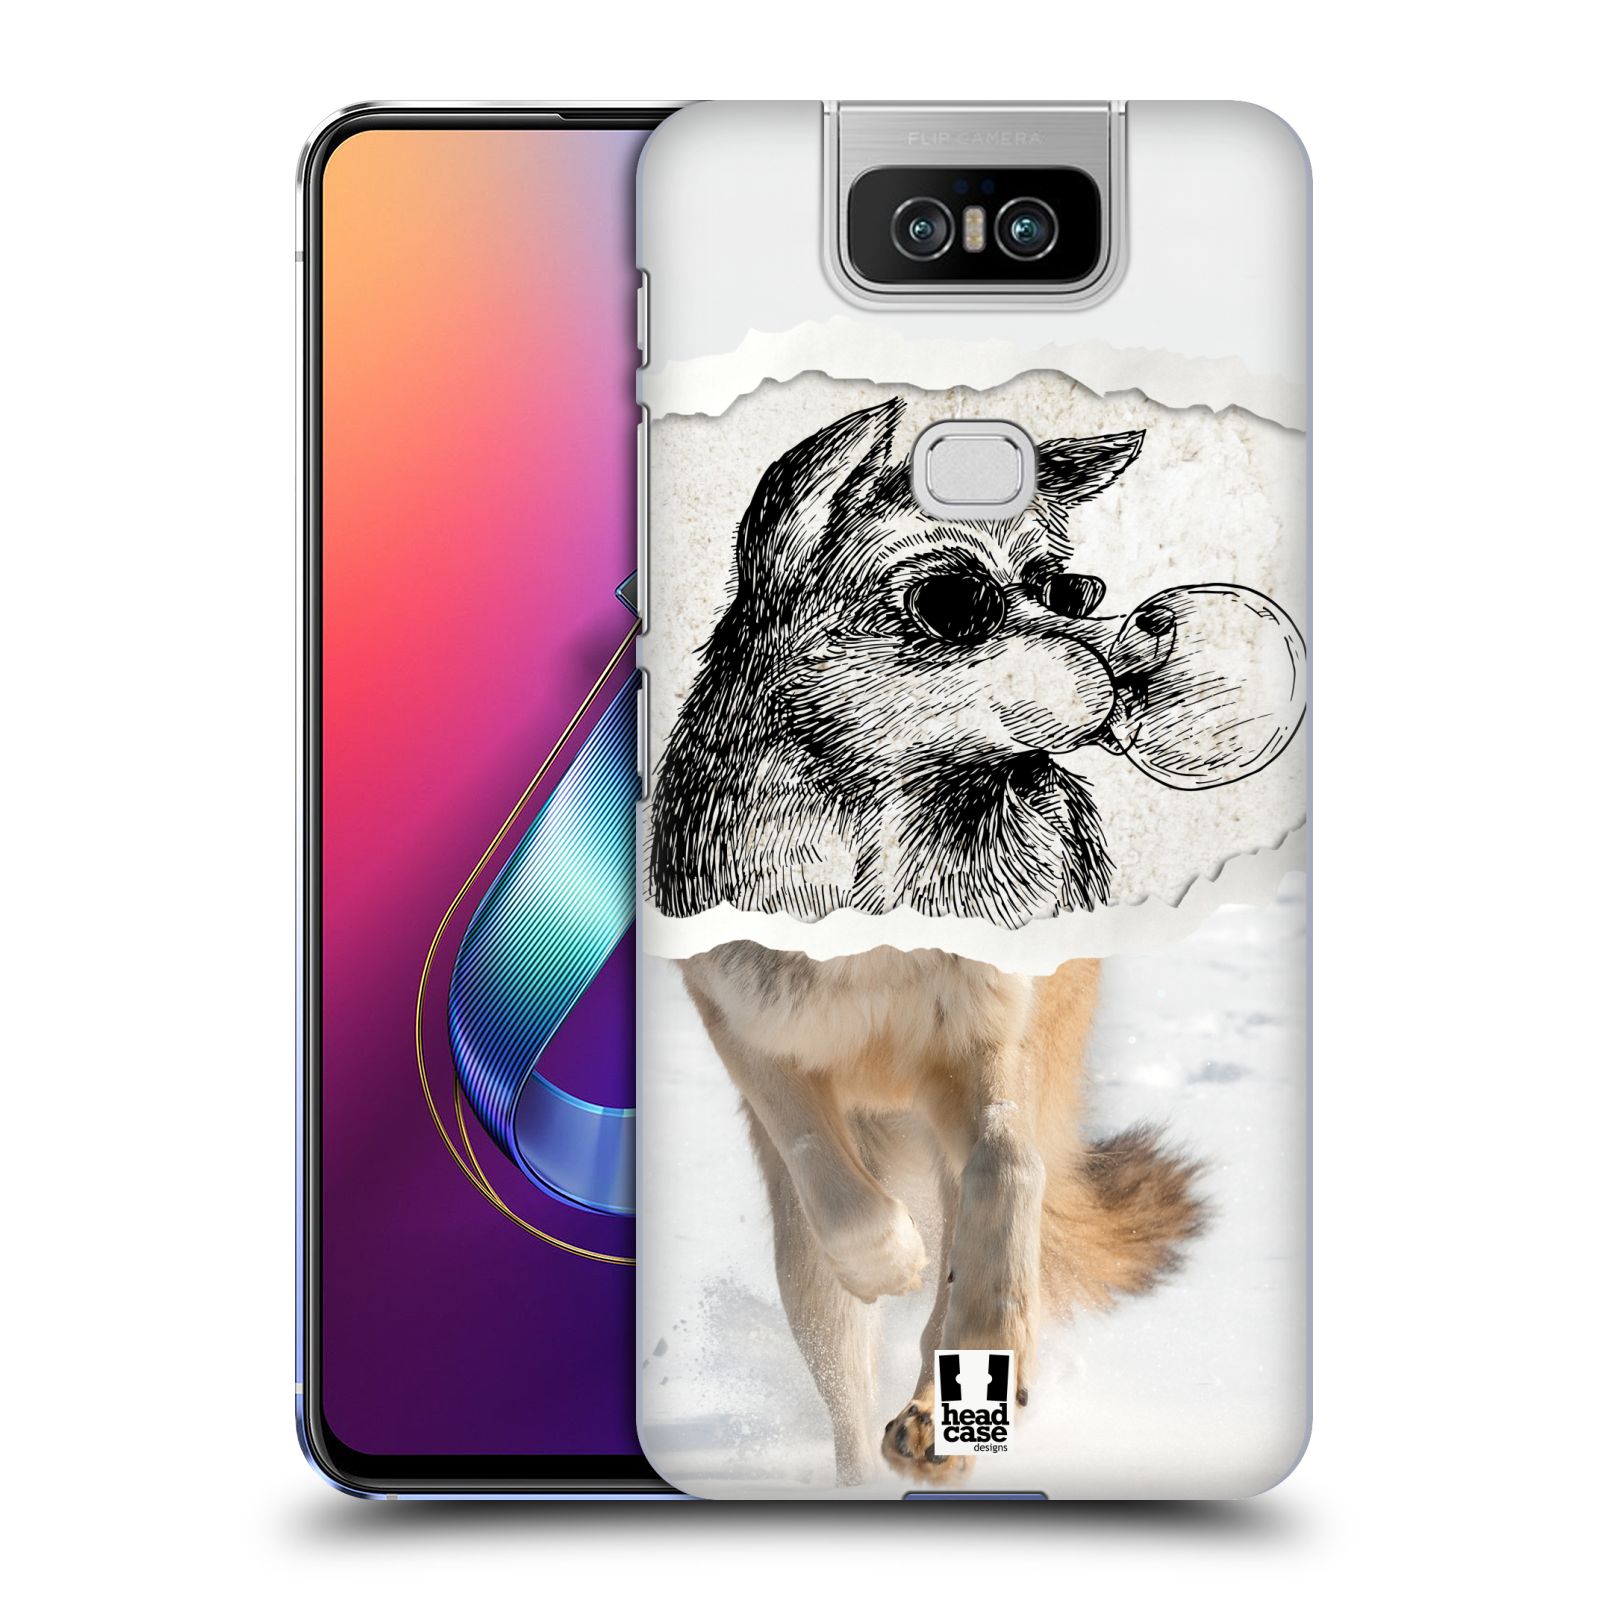 Pouzdro na mobil Asus Zenfone 6 ZS630KL - HEAD CASE - vzor zvířata koláž vlk pohodář